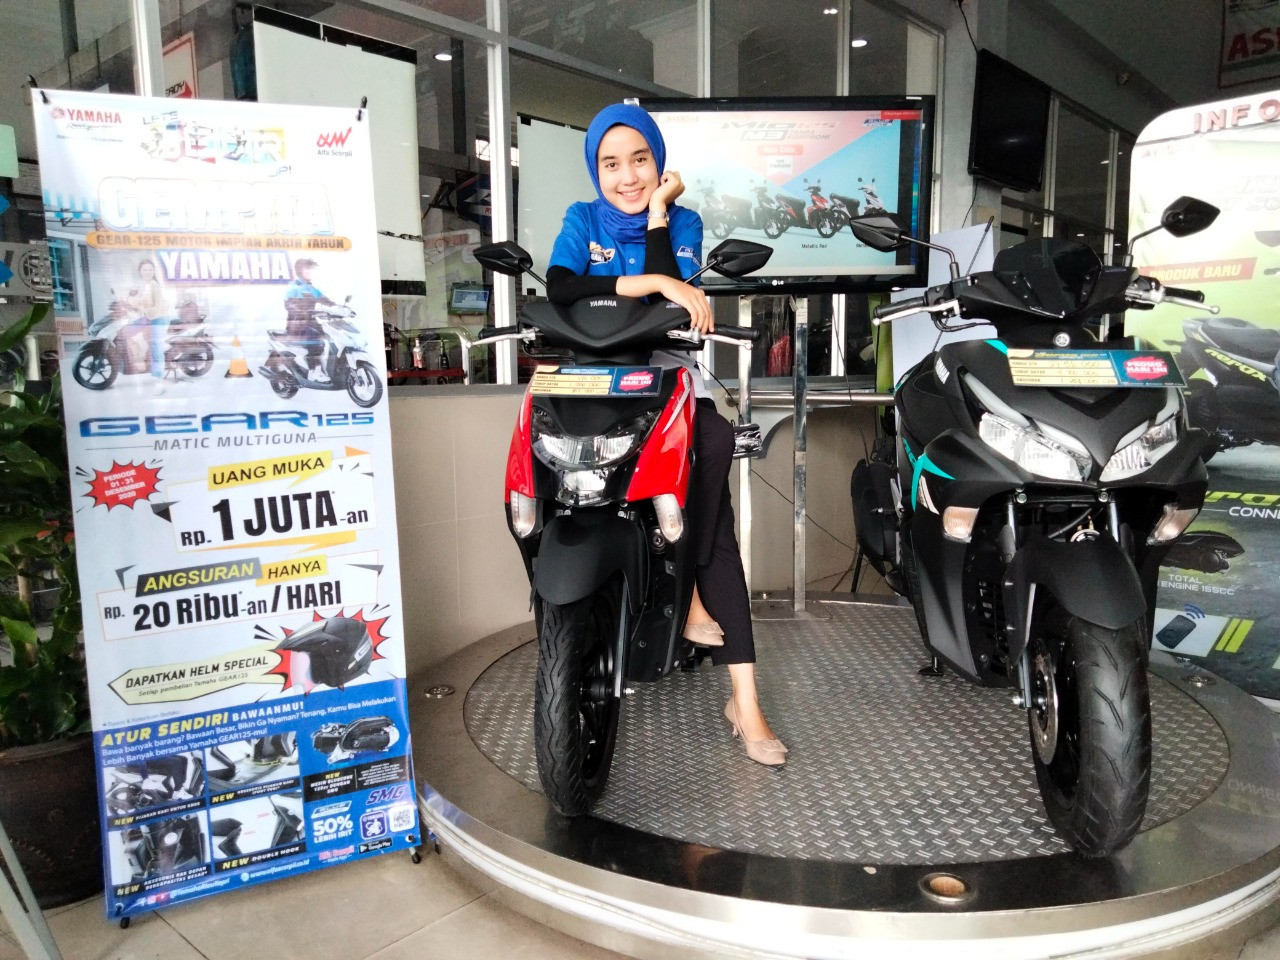 Promo Sepeda Motor Yamaha Gear 125, Uang Muka Rp1 Jutaan Dan Angsuran Rp20 Ribuan, Buruaaan!